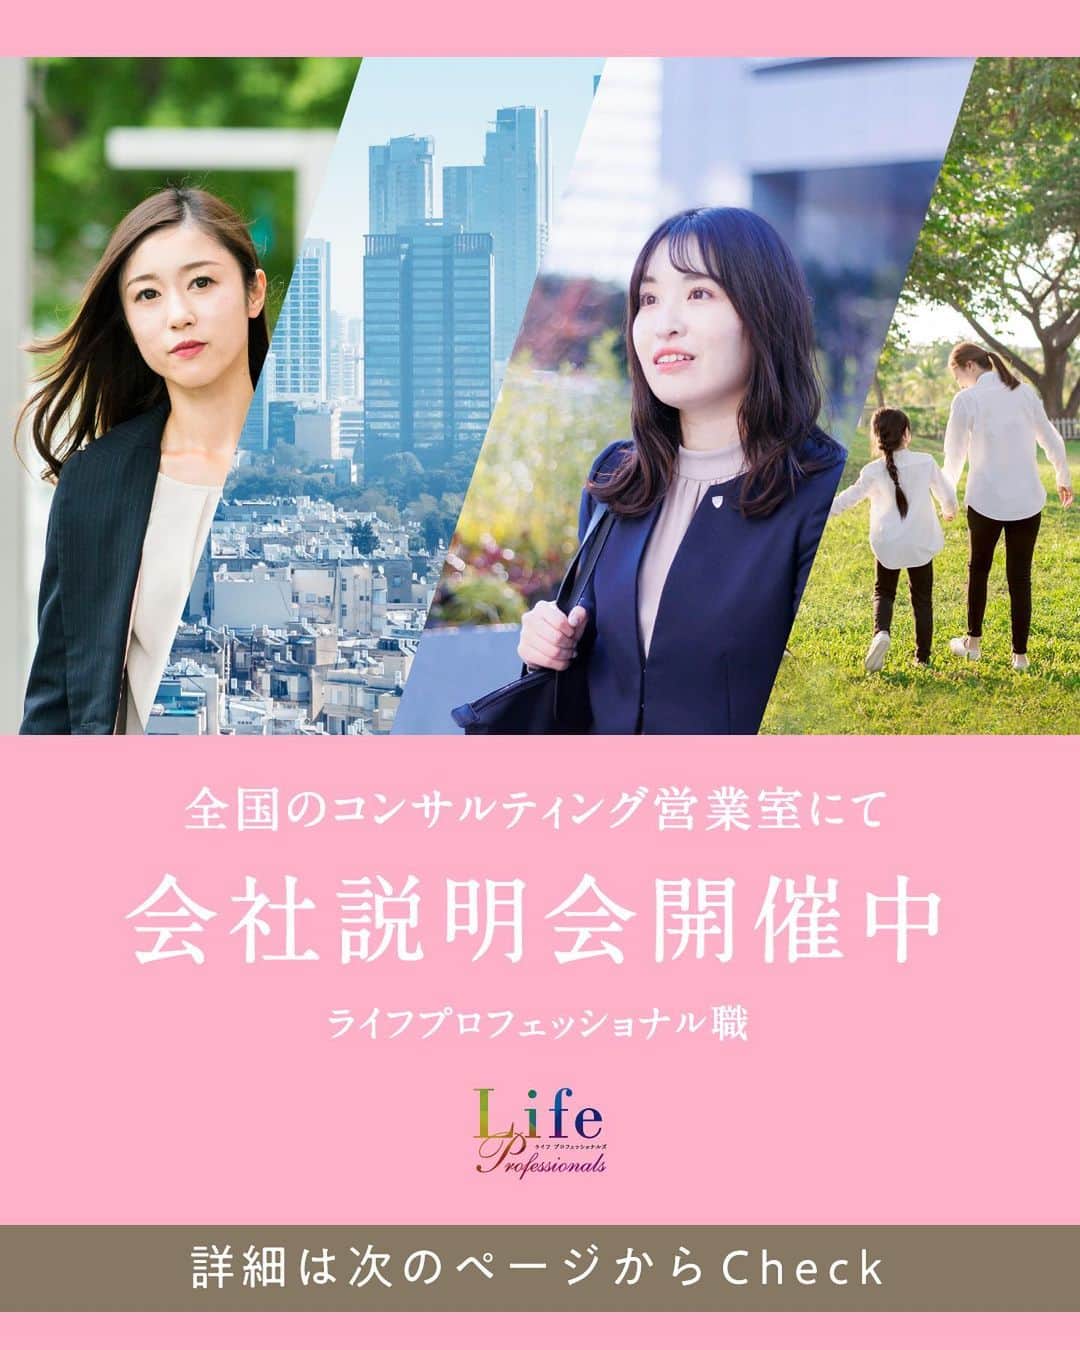 第一生命 新卒採用のインスタグラム：「. LifeProfessionals 全国のコンサルティング営業室にて会社説明会開催中  オフィスを見学したり、先輩たちと直接話すこともできます。 たくさんのご応募をお待ちしております！ https://www.dai-ichi-life-professionals.jp/  このアカウントでは、 第一生命のイベントご案内やお役立ち情報を発信しています。  ＝＝＝＝＝＝＝＝＝＝＝＝＝＝＝＝＝＝  ハイライトからも 会社説明会予約サイトに飛べます。  第一生命ライフプロフェッショナル職について 詳しく知りたい方は、 プロフィールTOPのURLからご覧ください。  ▼ライフプロフェッショナル職 マイページ https://www.dai-ichi-life-professionals.jp/  #第一生命#ライフプロフェッショナル職#総合営業職#LifeProfessionals#ライフプロフェッショナルズ#社員#営業#internship#インターン#インターンシップ#コンサルティング営業室#生命保険#生保#金融業界#新卒採用#内定者#就活#就職活動#24卒#24卒と繋がりたい#一生涯のパートナー」